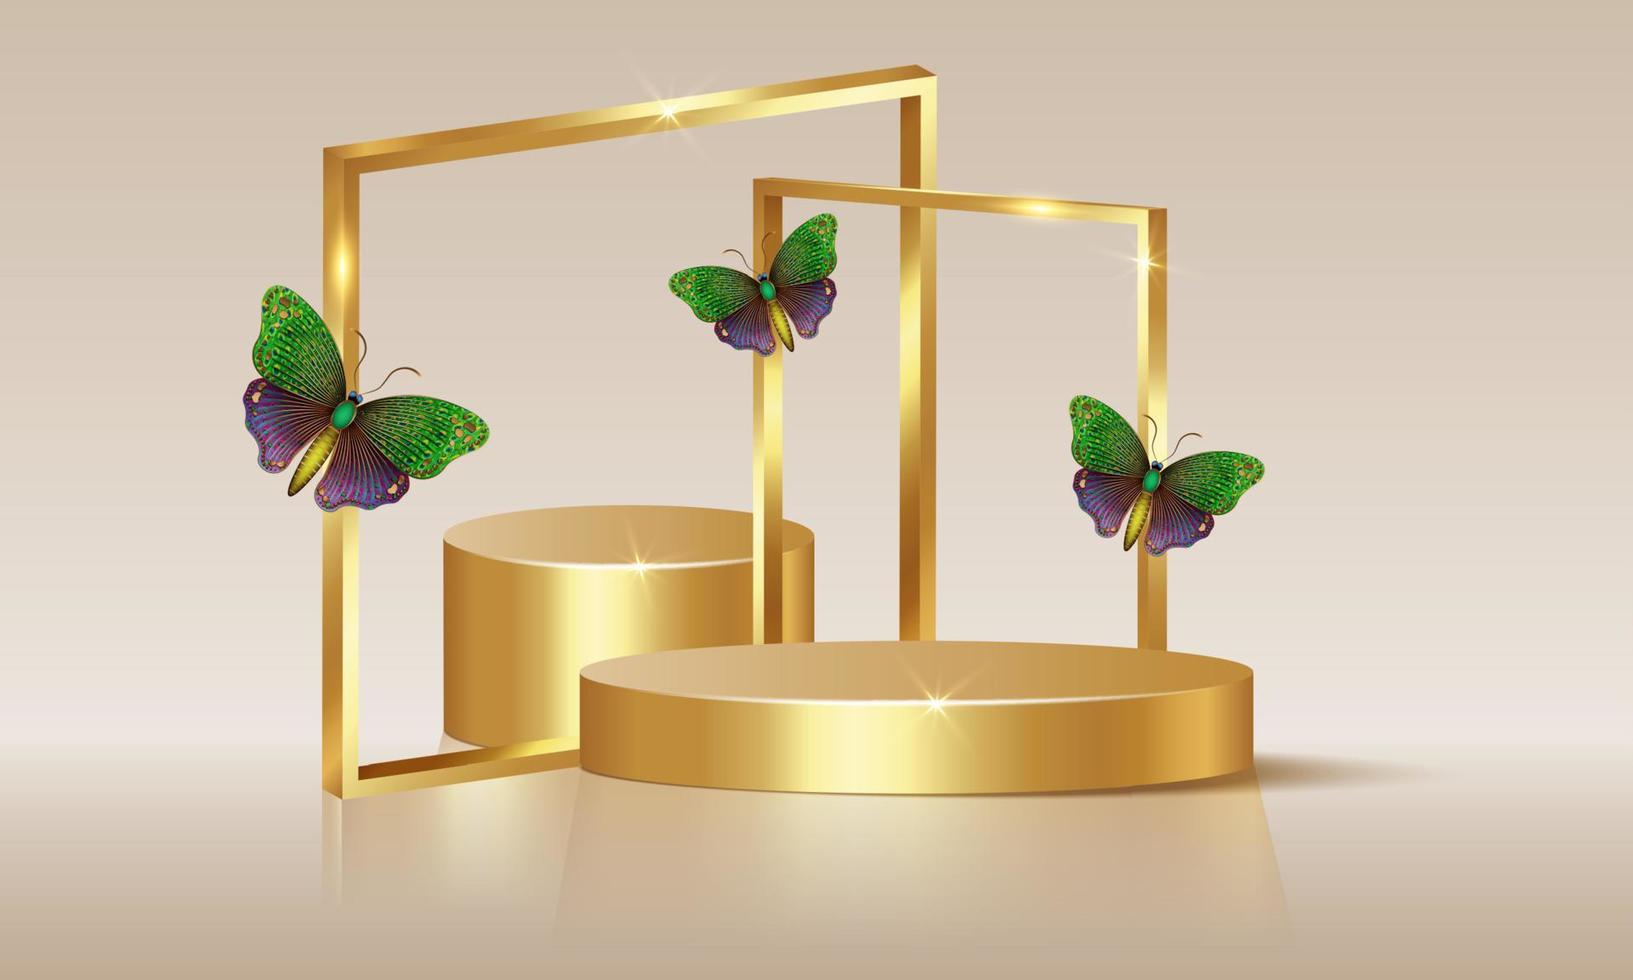 Palcoscenico vuoto 3d con archi quadrati dorati decorati con farfalle colorate, vettore isolato su sfondo beige. vetrina con podio vuoto e composizione floreale, mockup di esposizione di prodotti commerciali